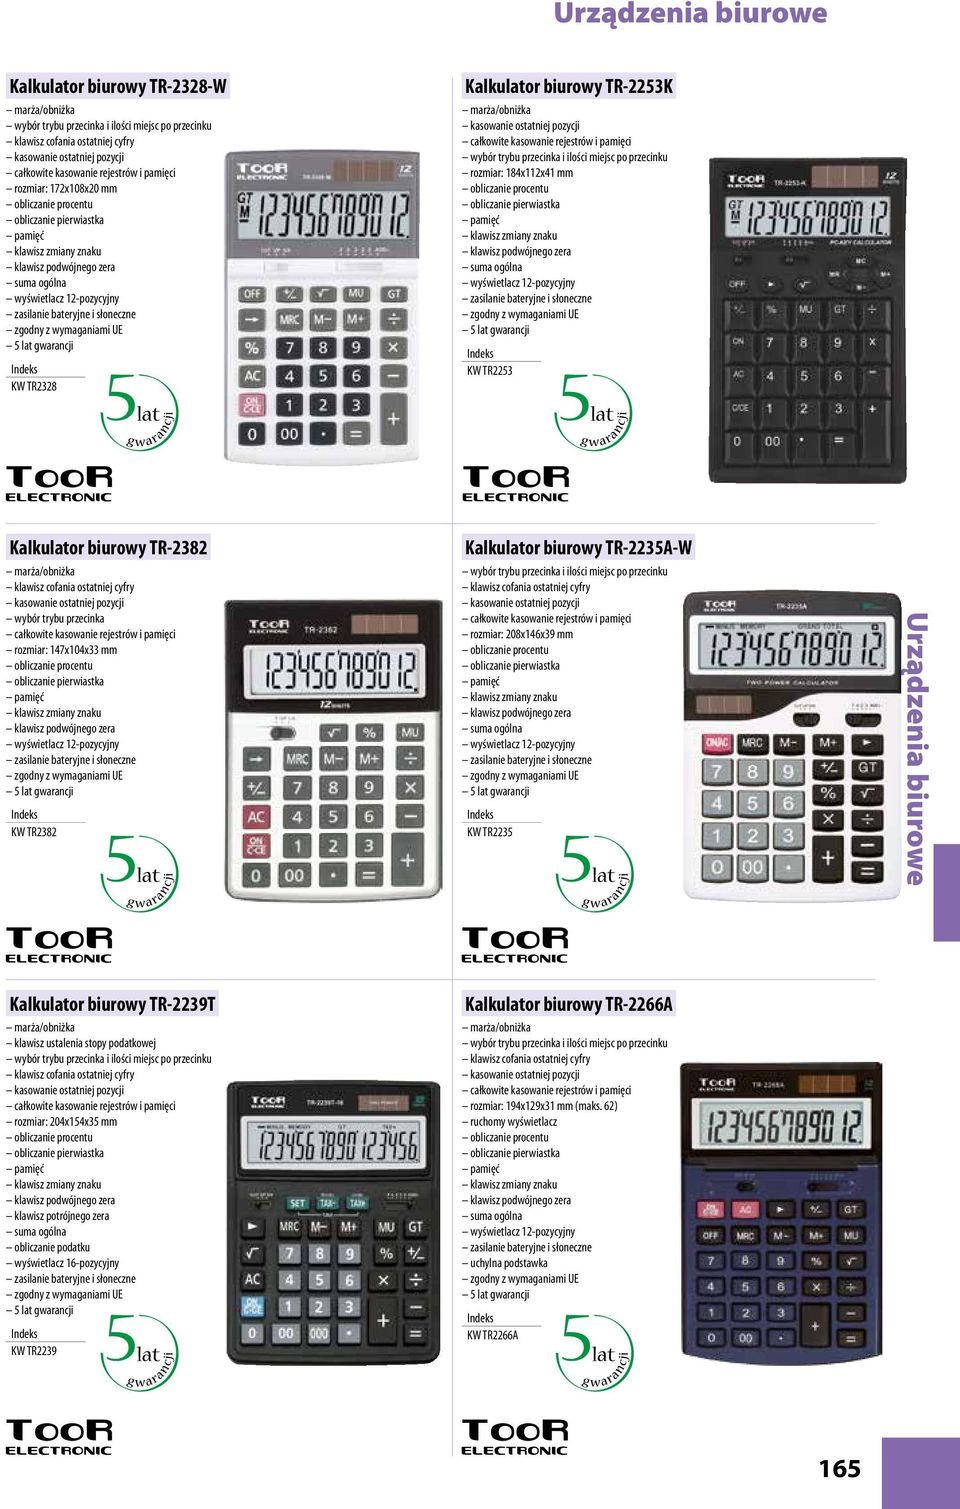 przecinka rozmiar: 147x104x33 mm KW TR2382 Kalkulator biurowy TR-2235A-W wybór trybu przecinka i ilości miejsc po przecinku klawisz cofania ostatniej cyfry rozmiar: 208x146x39 mm suma ogólna KW